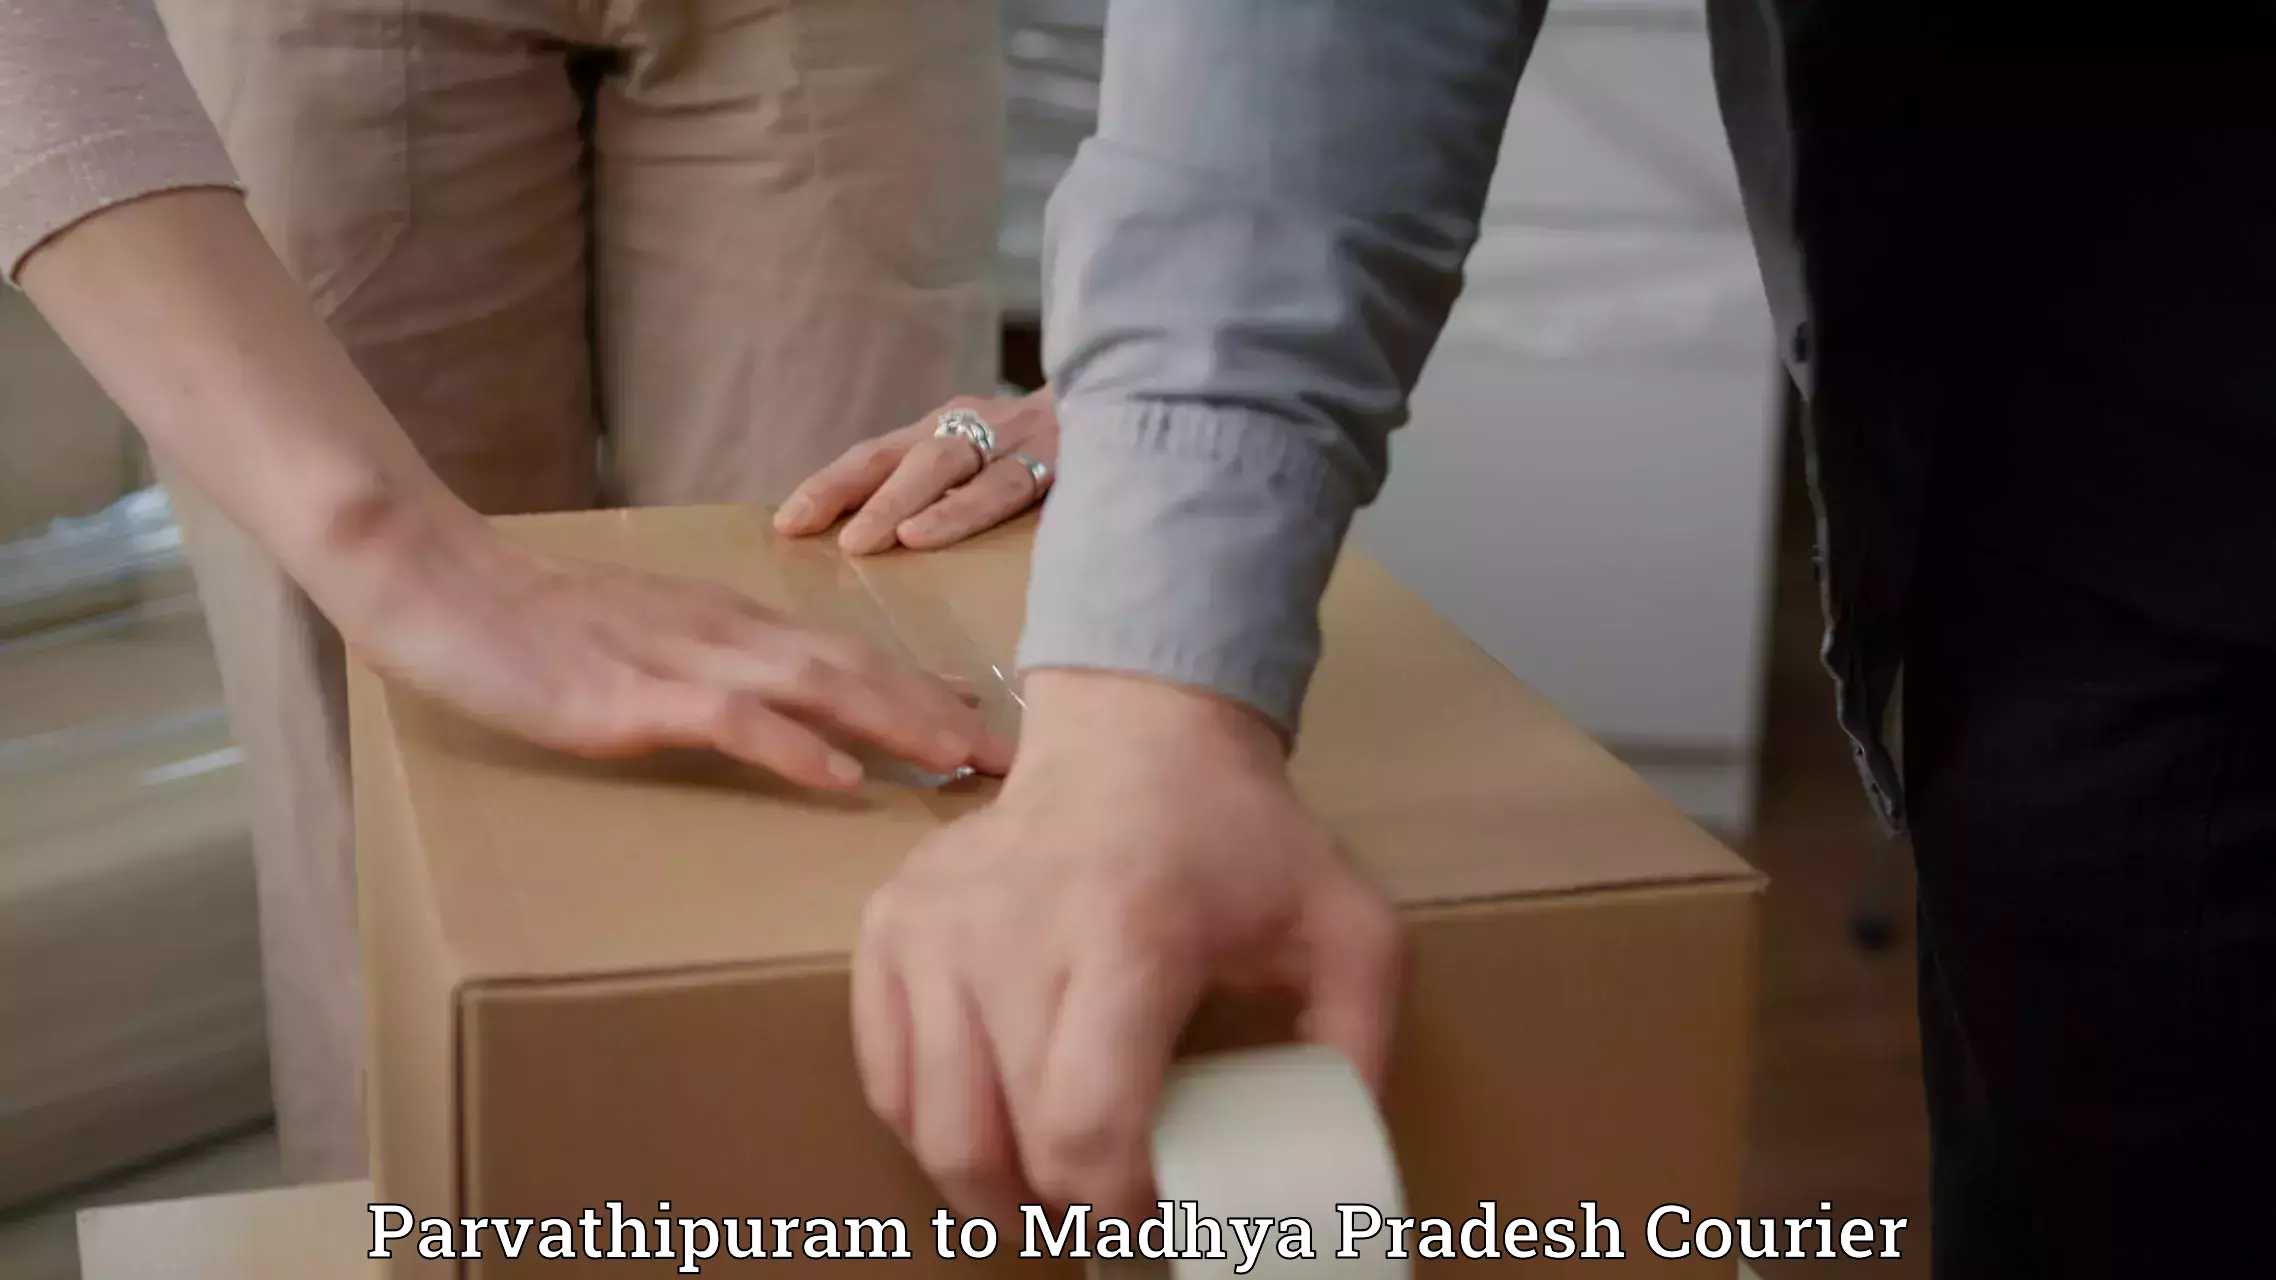 Quick parcel dispatch Parvathipuram to Datia